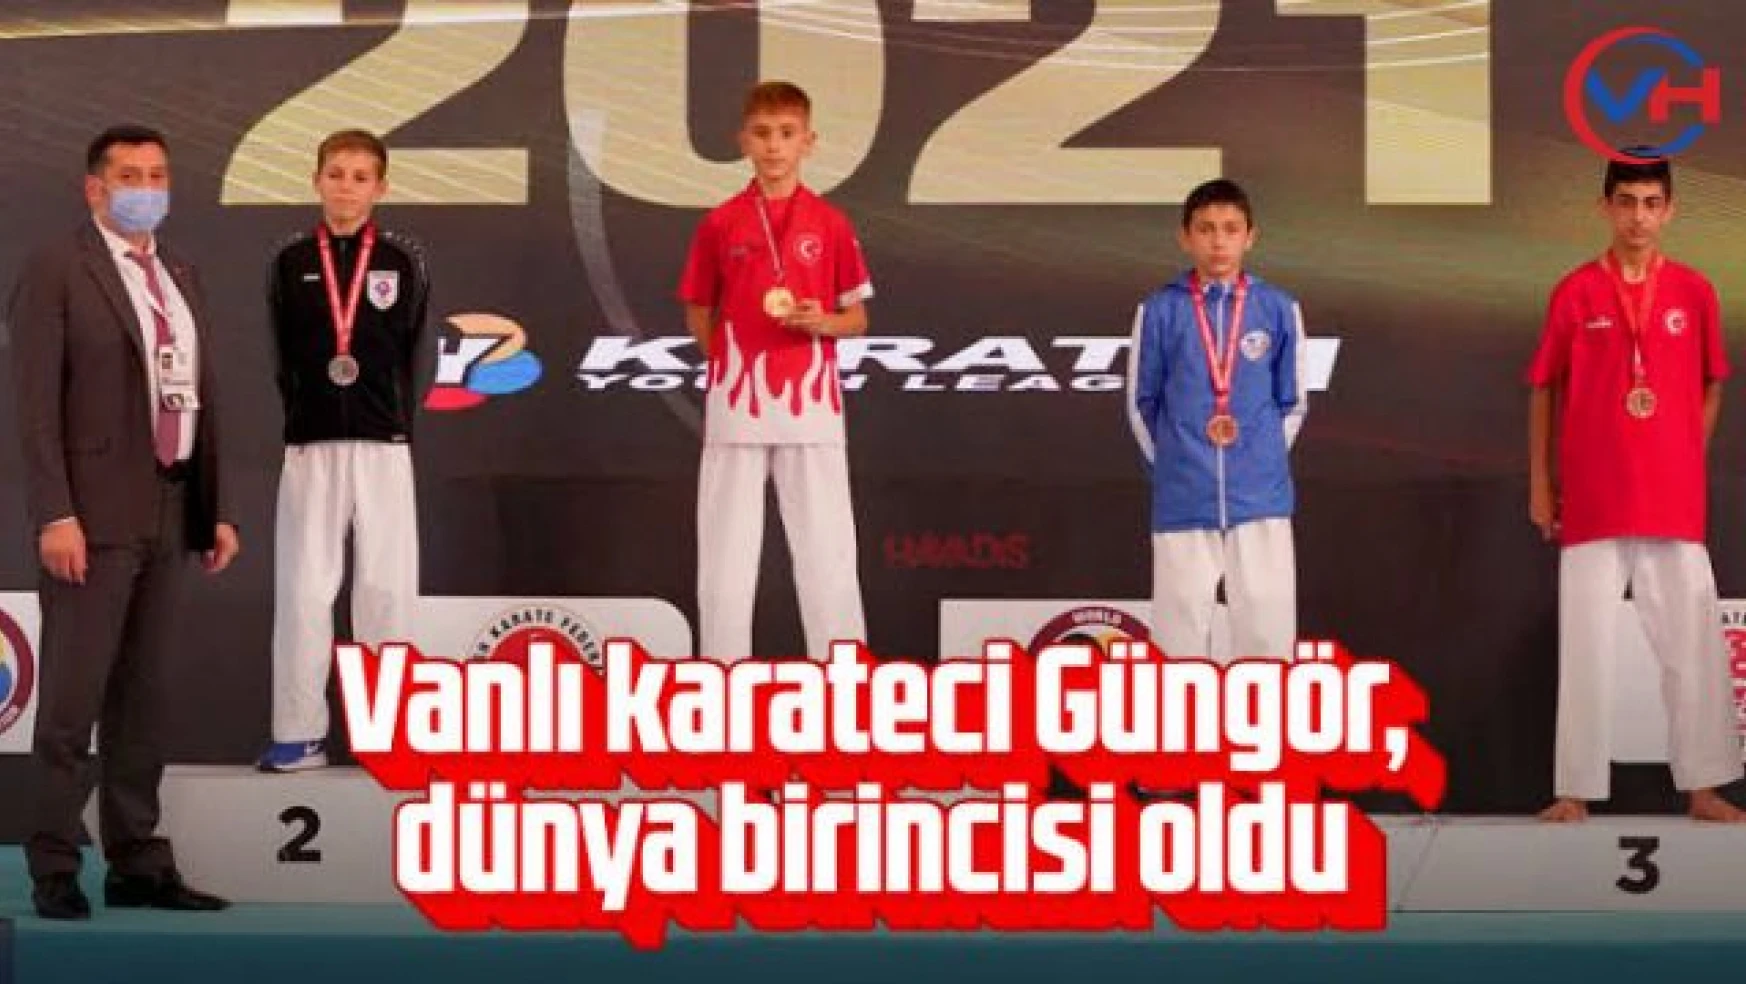 Vanlı karateci Güngör, dünya birincisi oldu!